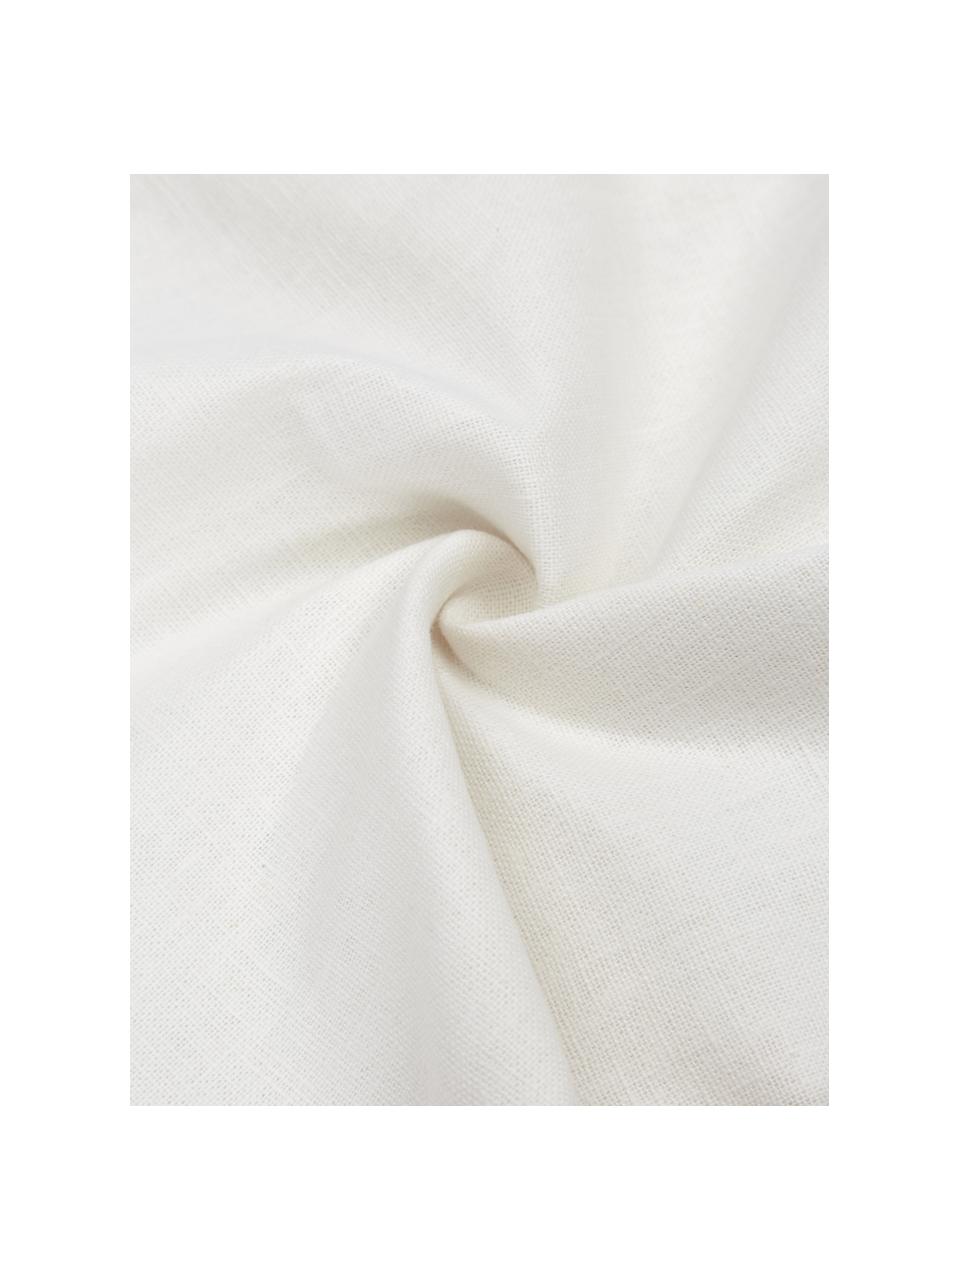 Leinen-Kissenhülle Mira mit Stehsaum in Weiß, 51 % Leinen, 49 % Baumwolle, Weiß, B 30 x L 50 cm